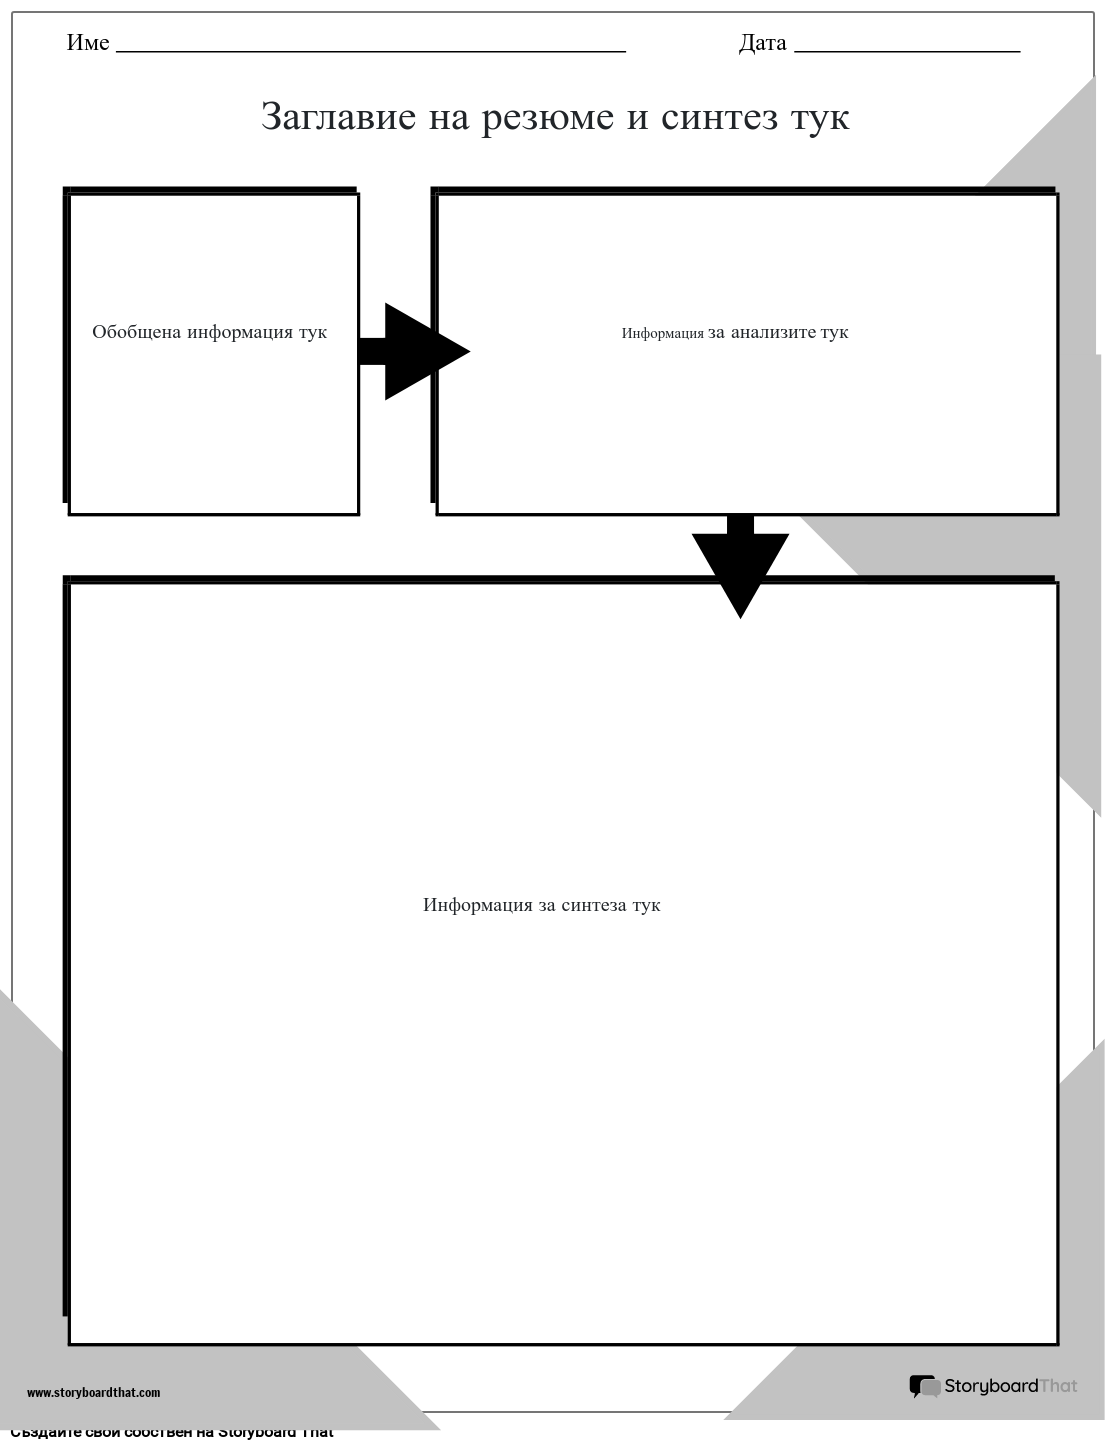 Създаване на ново резюме на страница и шаблон за синтез 1 (черно-бял)